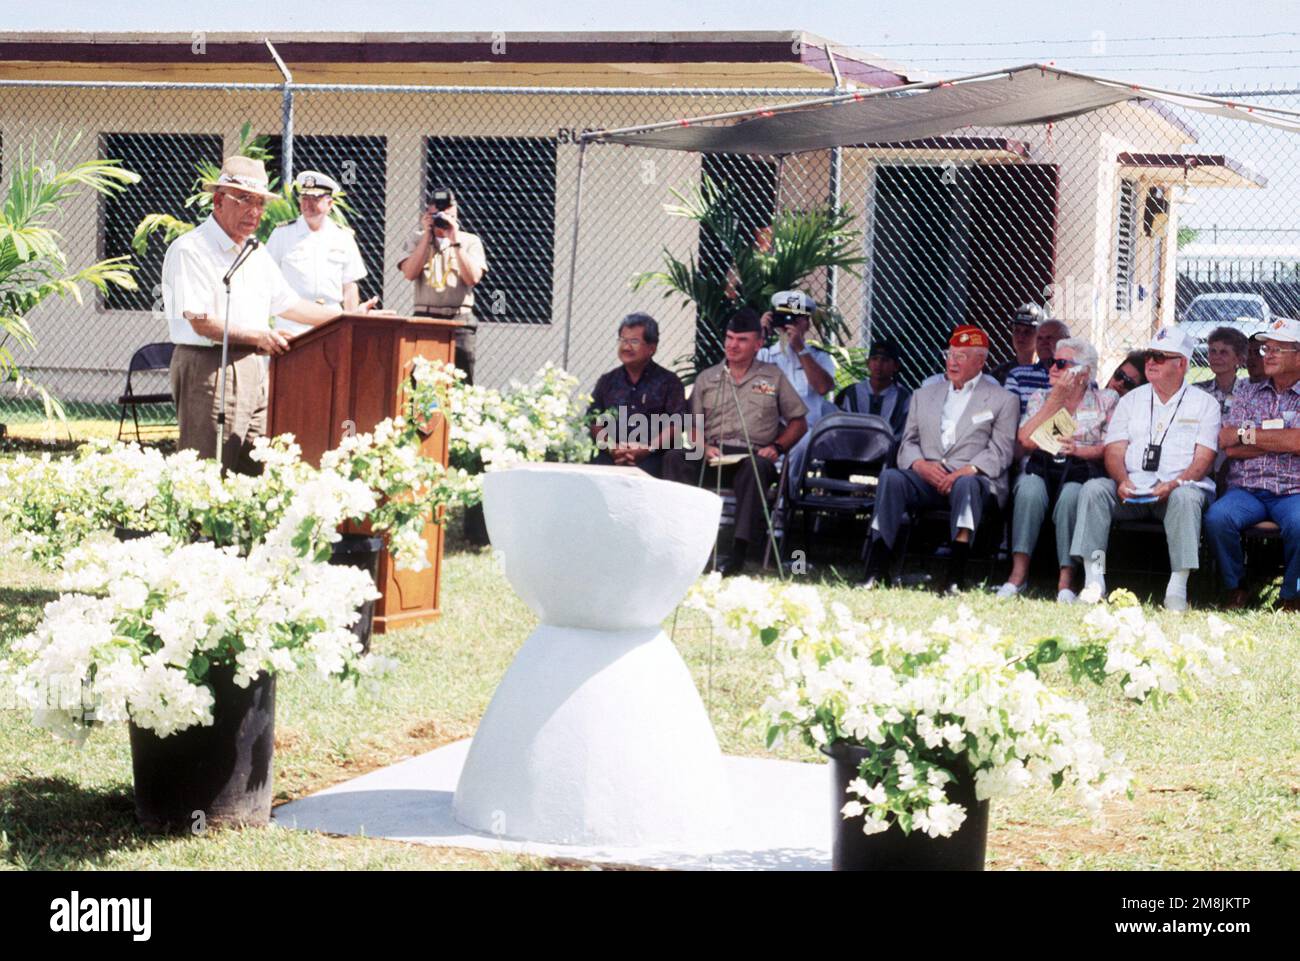 Marinekorps-Brigade Im Ruhestand. GEN. Ben Blaz spricht vor dem Publikum während der Zeremonie zum 50. Jahrestag der Befreiung Guams aus dem Zweiten Weltkrieg. Staat: Guam Country: Nördliche Marianen (MNP) Stockfoto